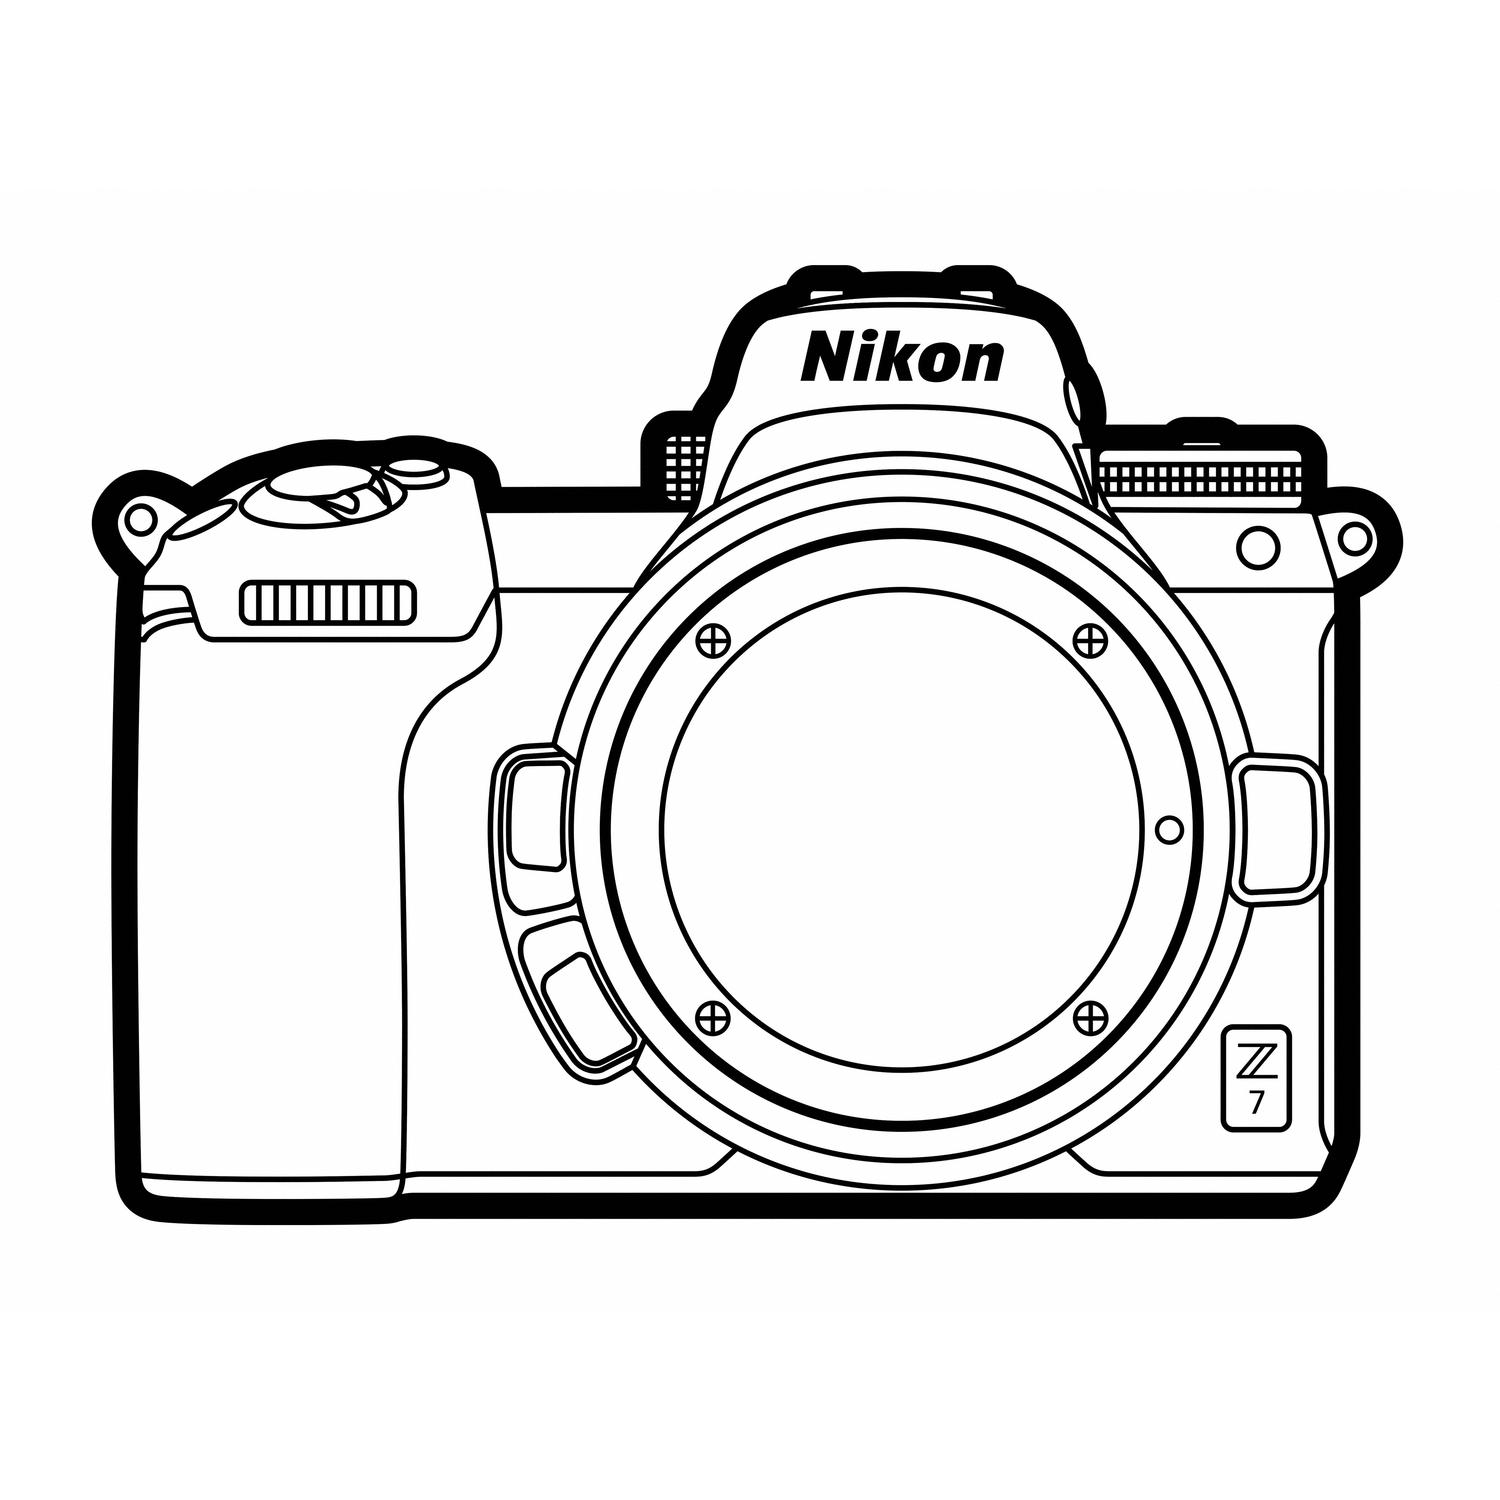 Фотоаппарат Nikon d80 Sketch